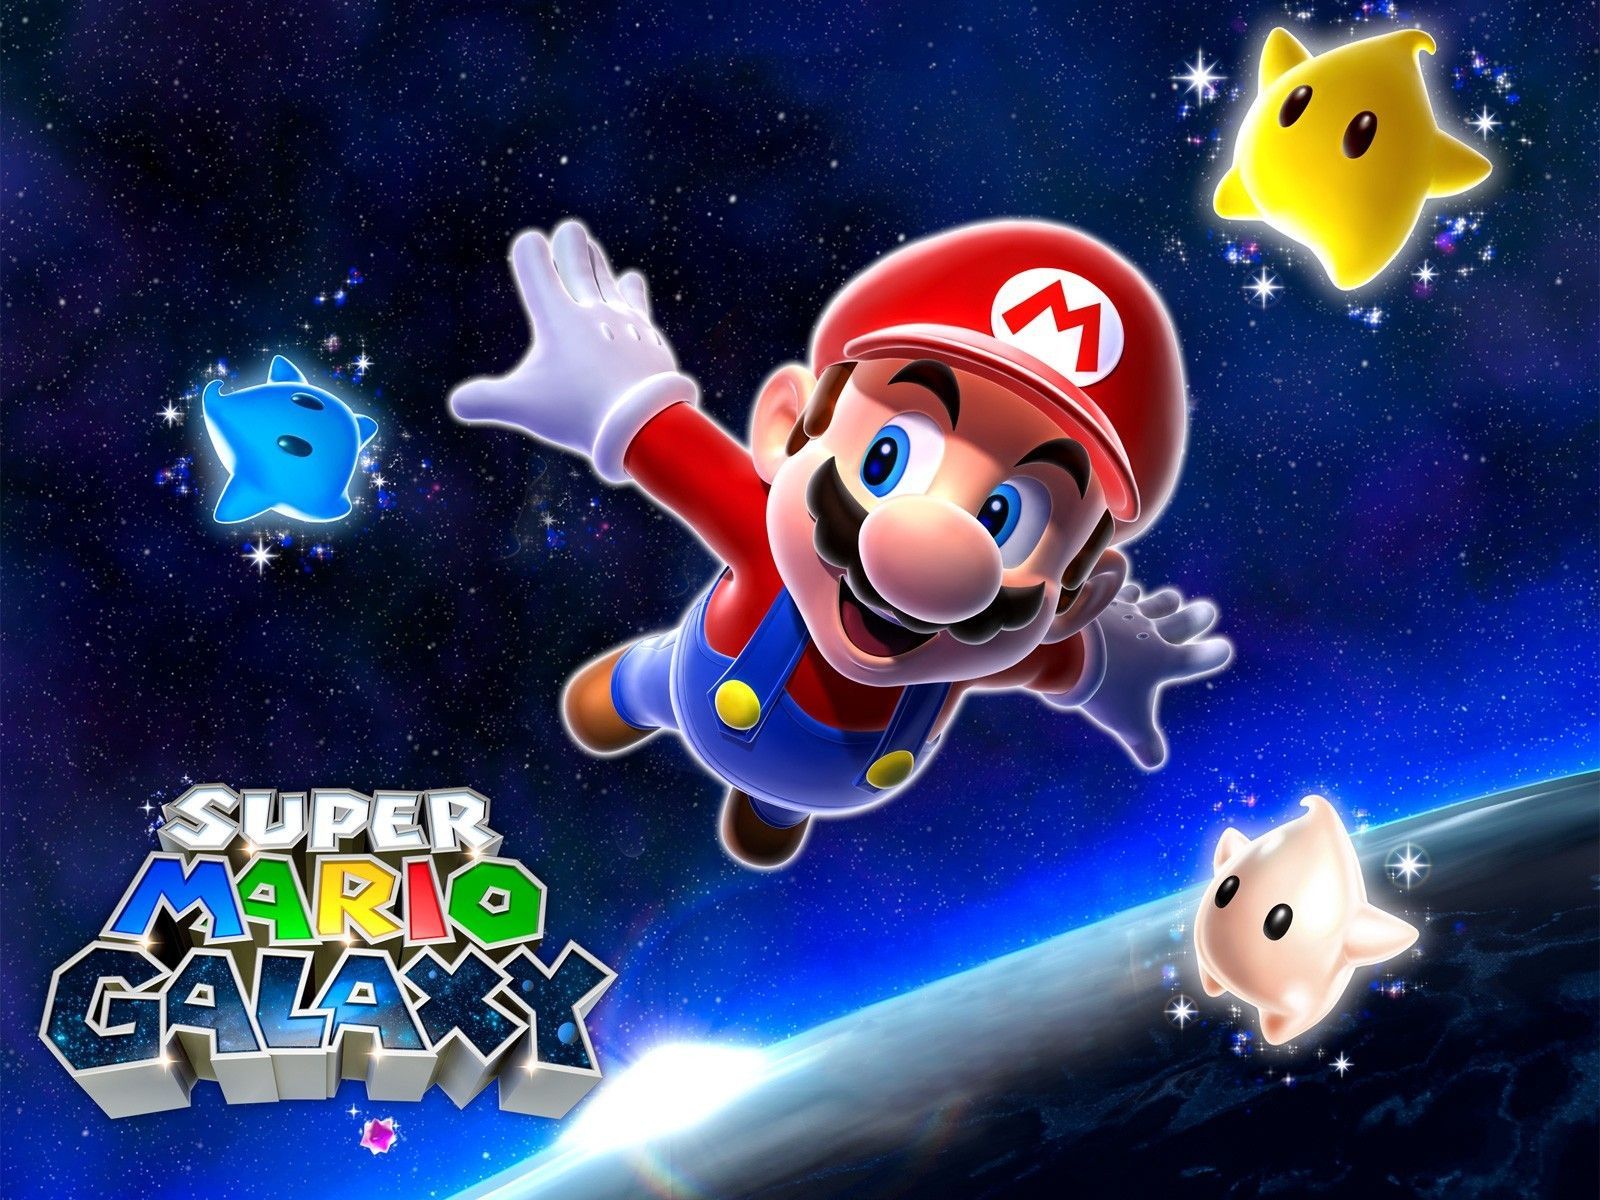 Super Mario Galaxy Games Wallpaper Free Downlo #1360 Wallpaper ...